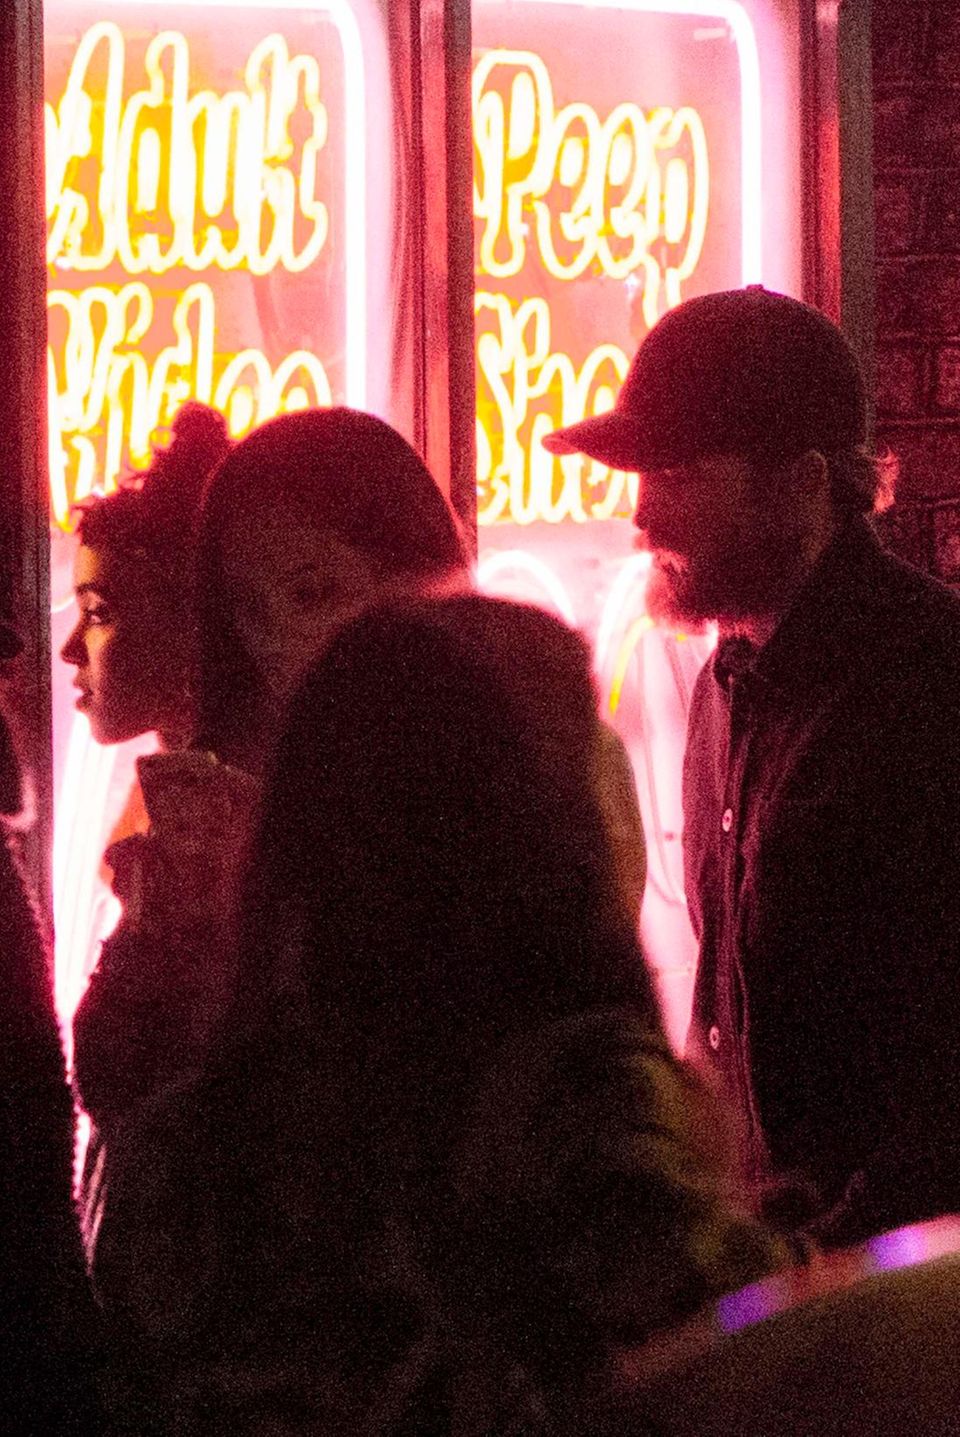 Robert Pattinson mit seiner Freundin Fka twigs vor einem Laden im Londoner Stadtteil Soho, der eindeutig nach Peepshow aussieht